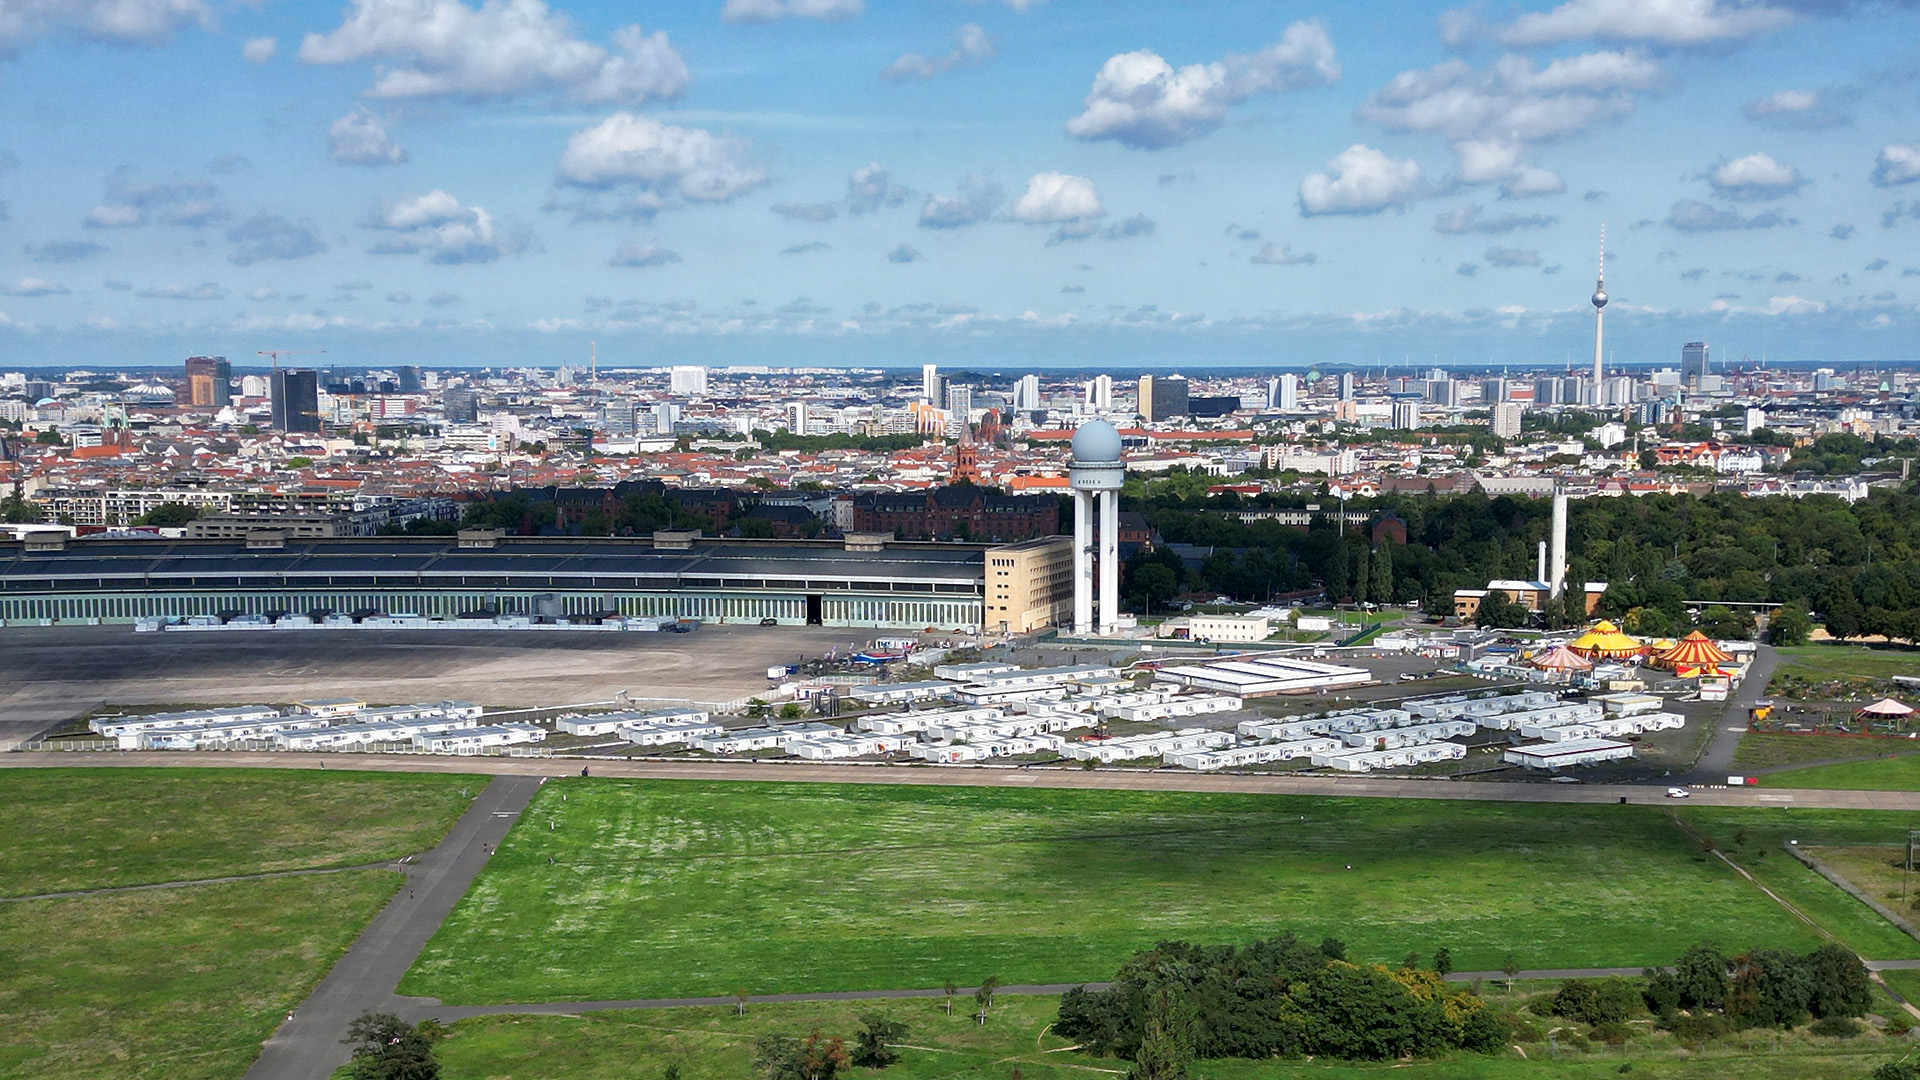 Symbolbild: Das riesige Flugfeld vom ehemaligen Flughafen Tempelhof ist vor dem Hintergrund der Wohnungsnot wieder im Gespräch. (Quelle: dpa/Bernd von Jutrczenka)